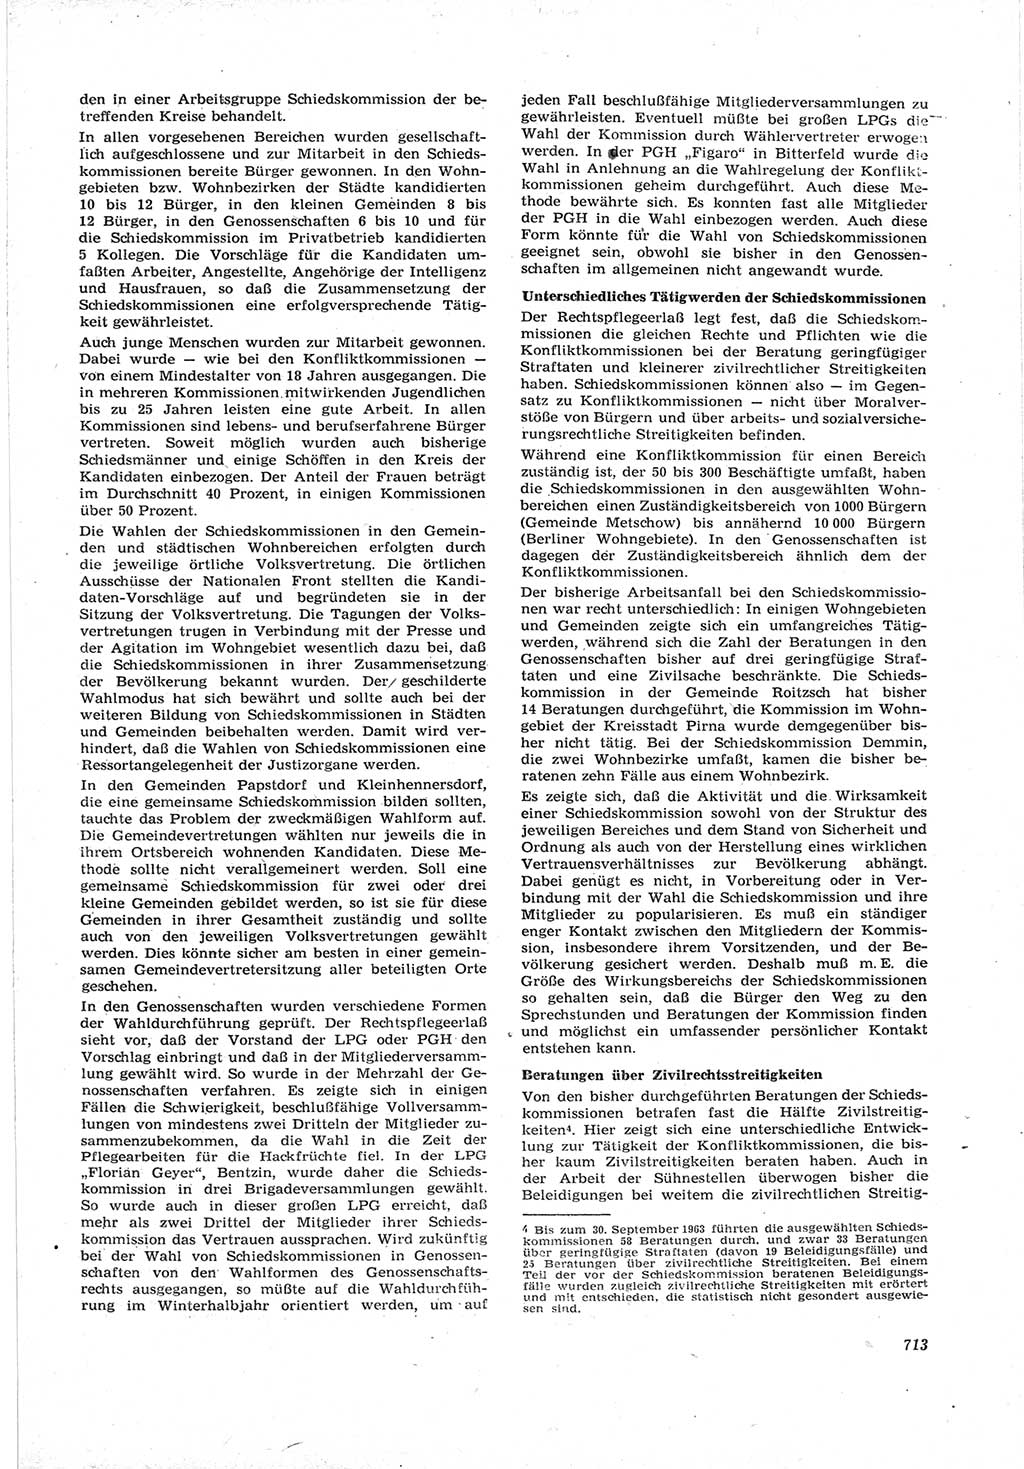 Neue Justiz (NJ), Zeitschrift für Recht und Rechtswissenschaft [Deutsche Demokratische Republik (DDR)], 17. Jahrgang 1963, Seite 713 (NJ DDR 1963, S. 713)